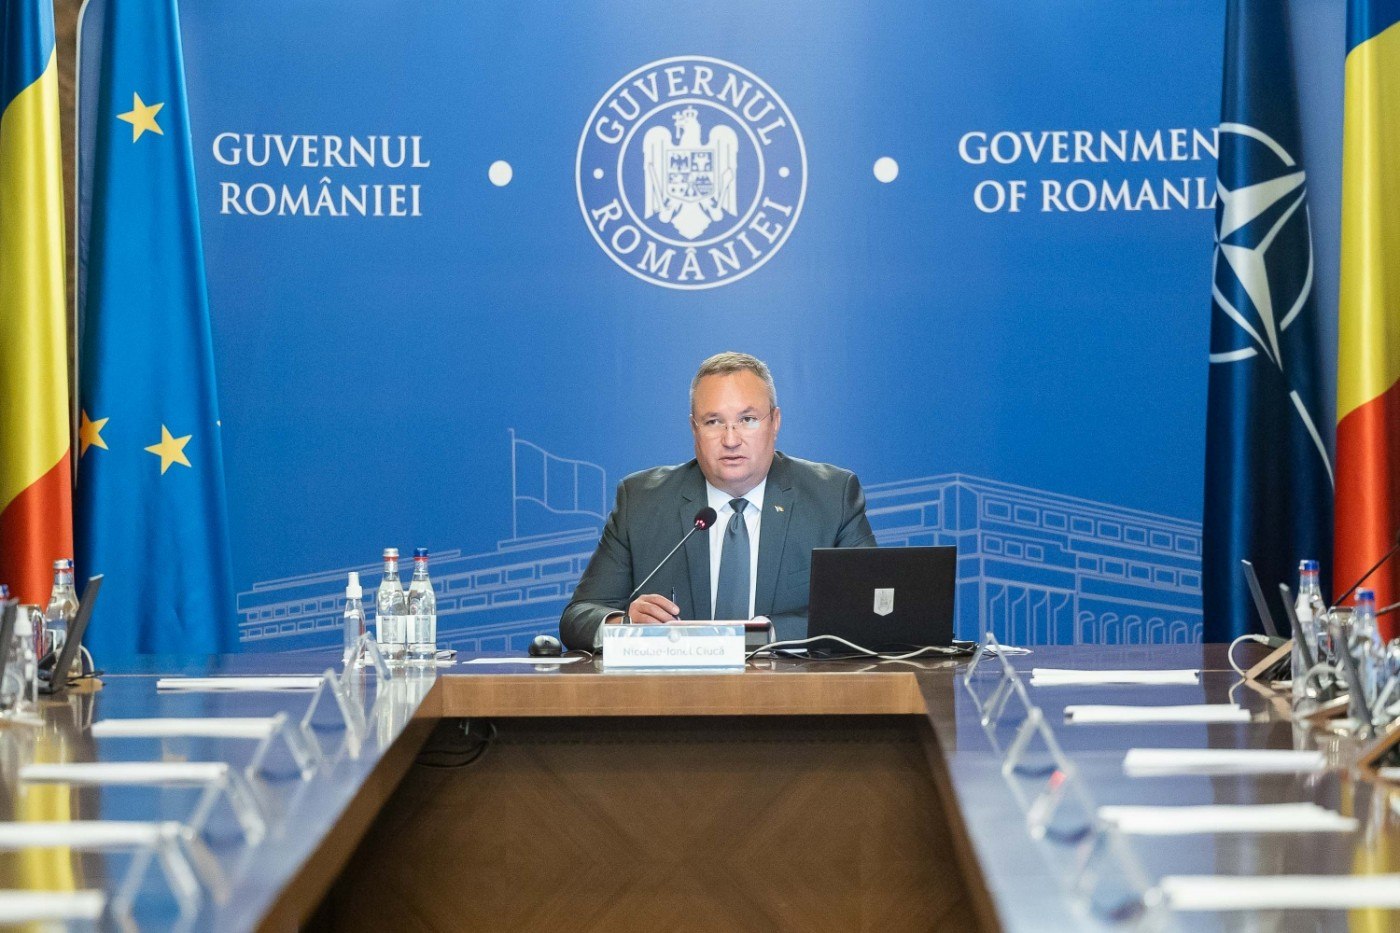  Ciucă l-a felicitat pe noul premier bulgar: Guvernul României este gata și dornic să continue cooperarea